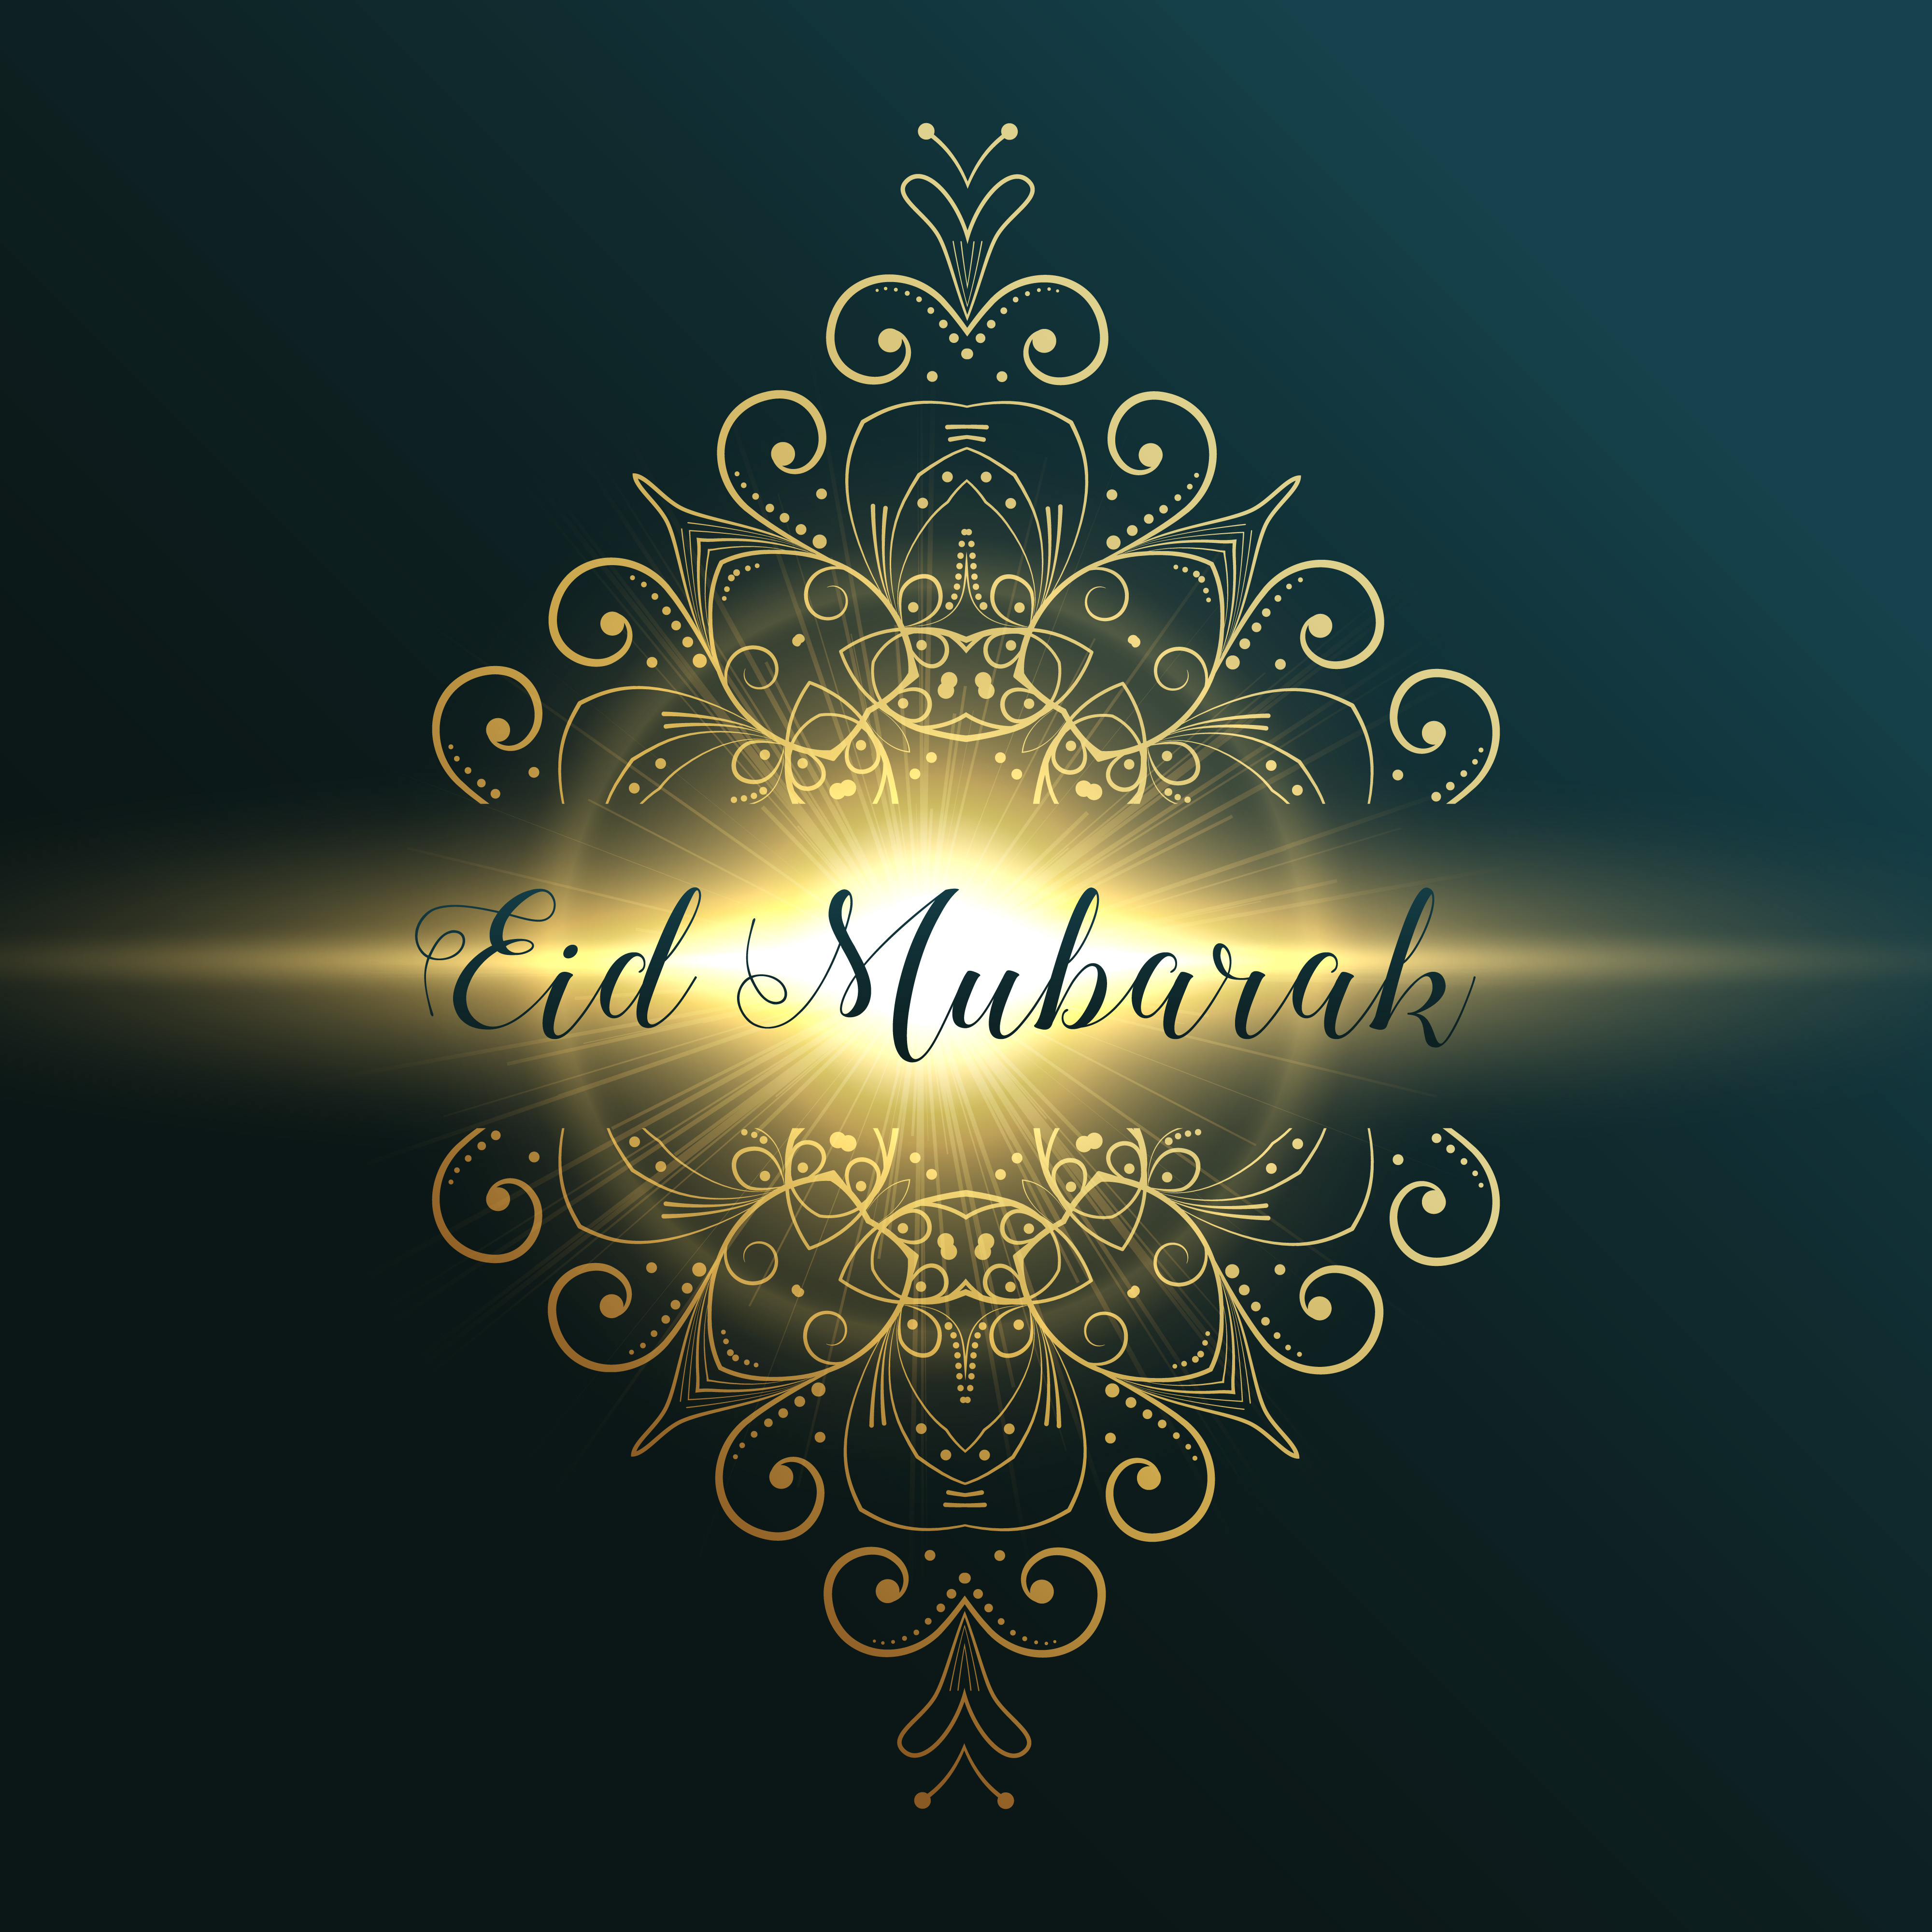 eid mubarak muslim festival greeting card design with floral dec